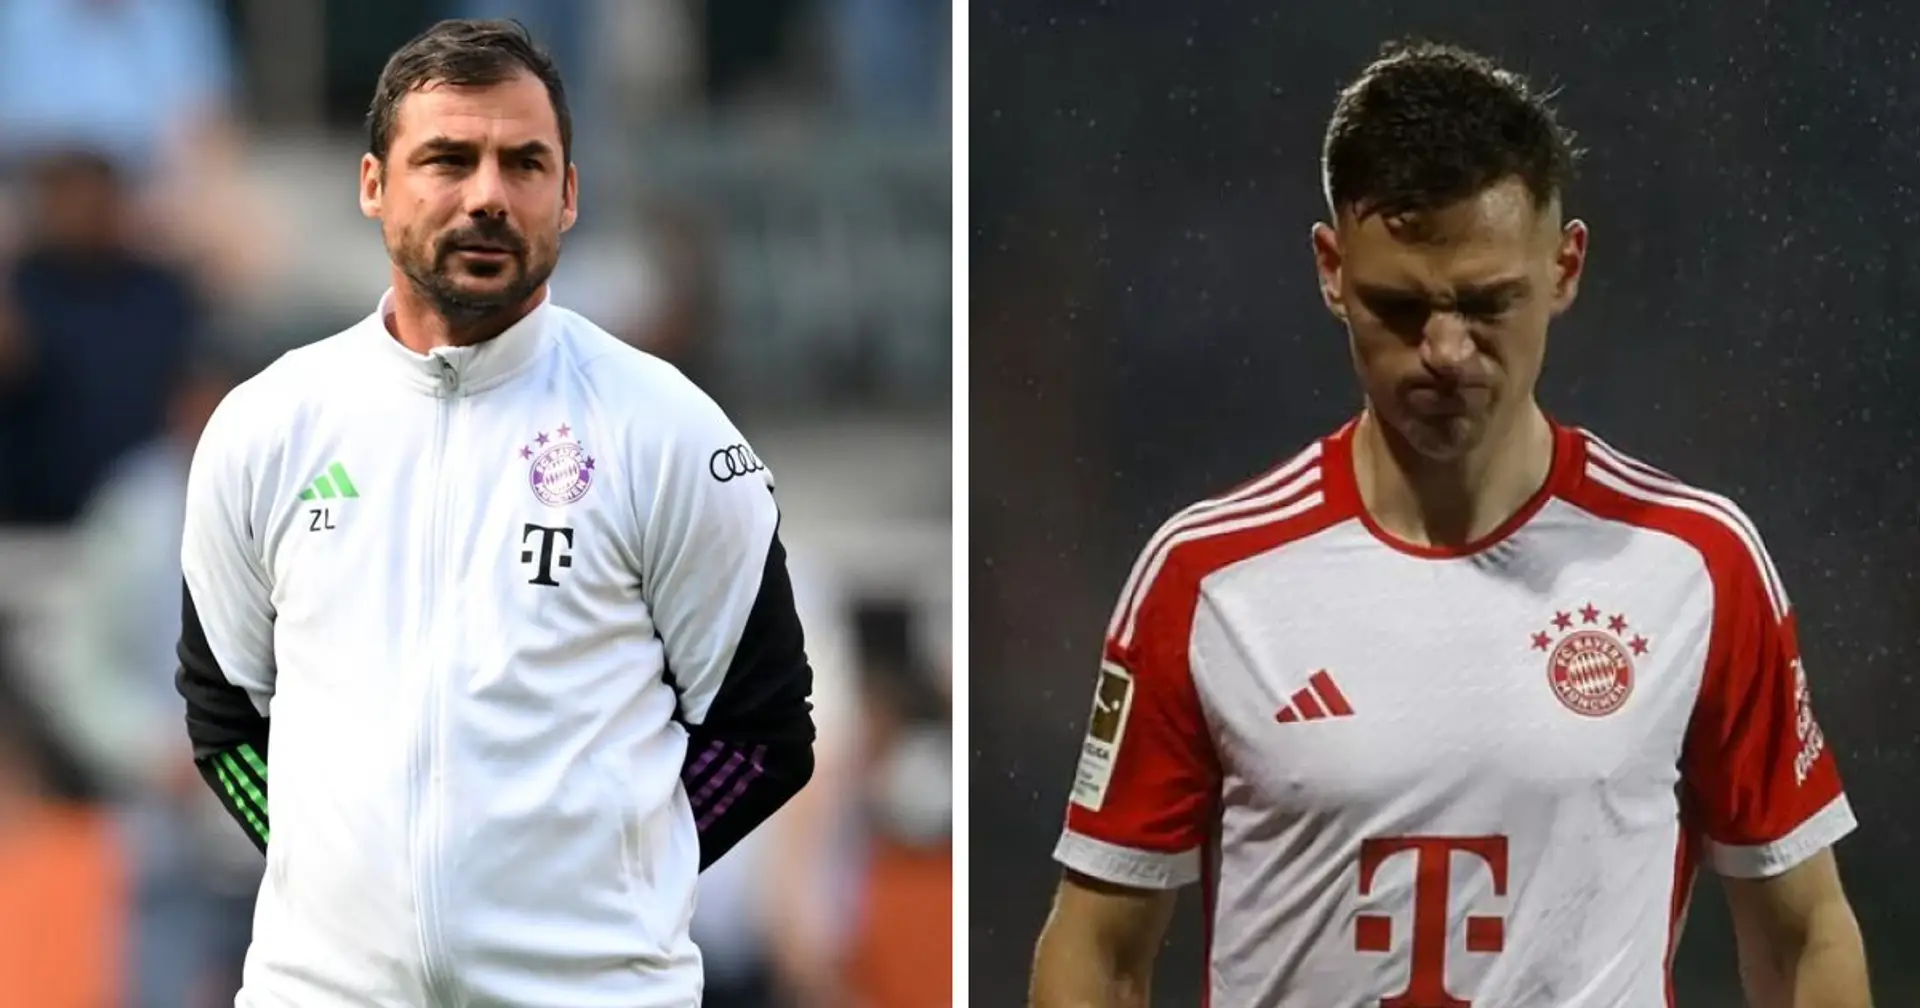 "Ce n'est pas pour le public" : Tuchel confirme une altercation tendue après le match entre Kimmich et l'assistant du Bayern